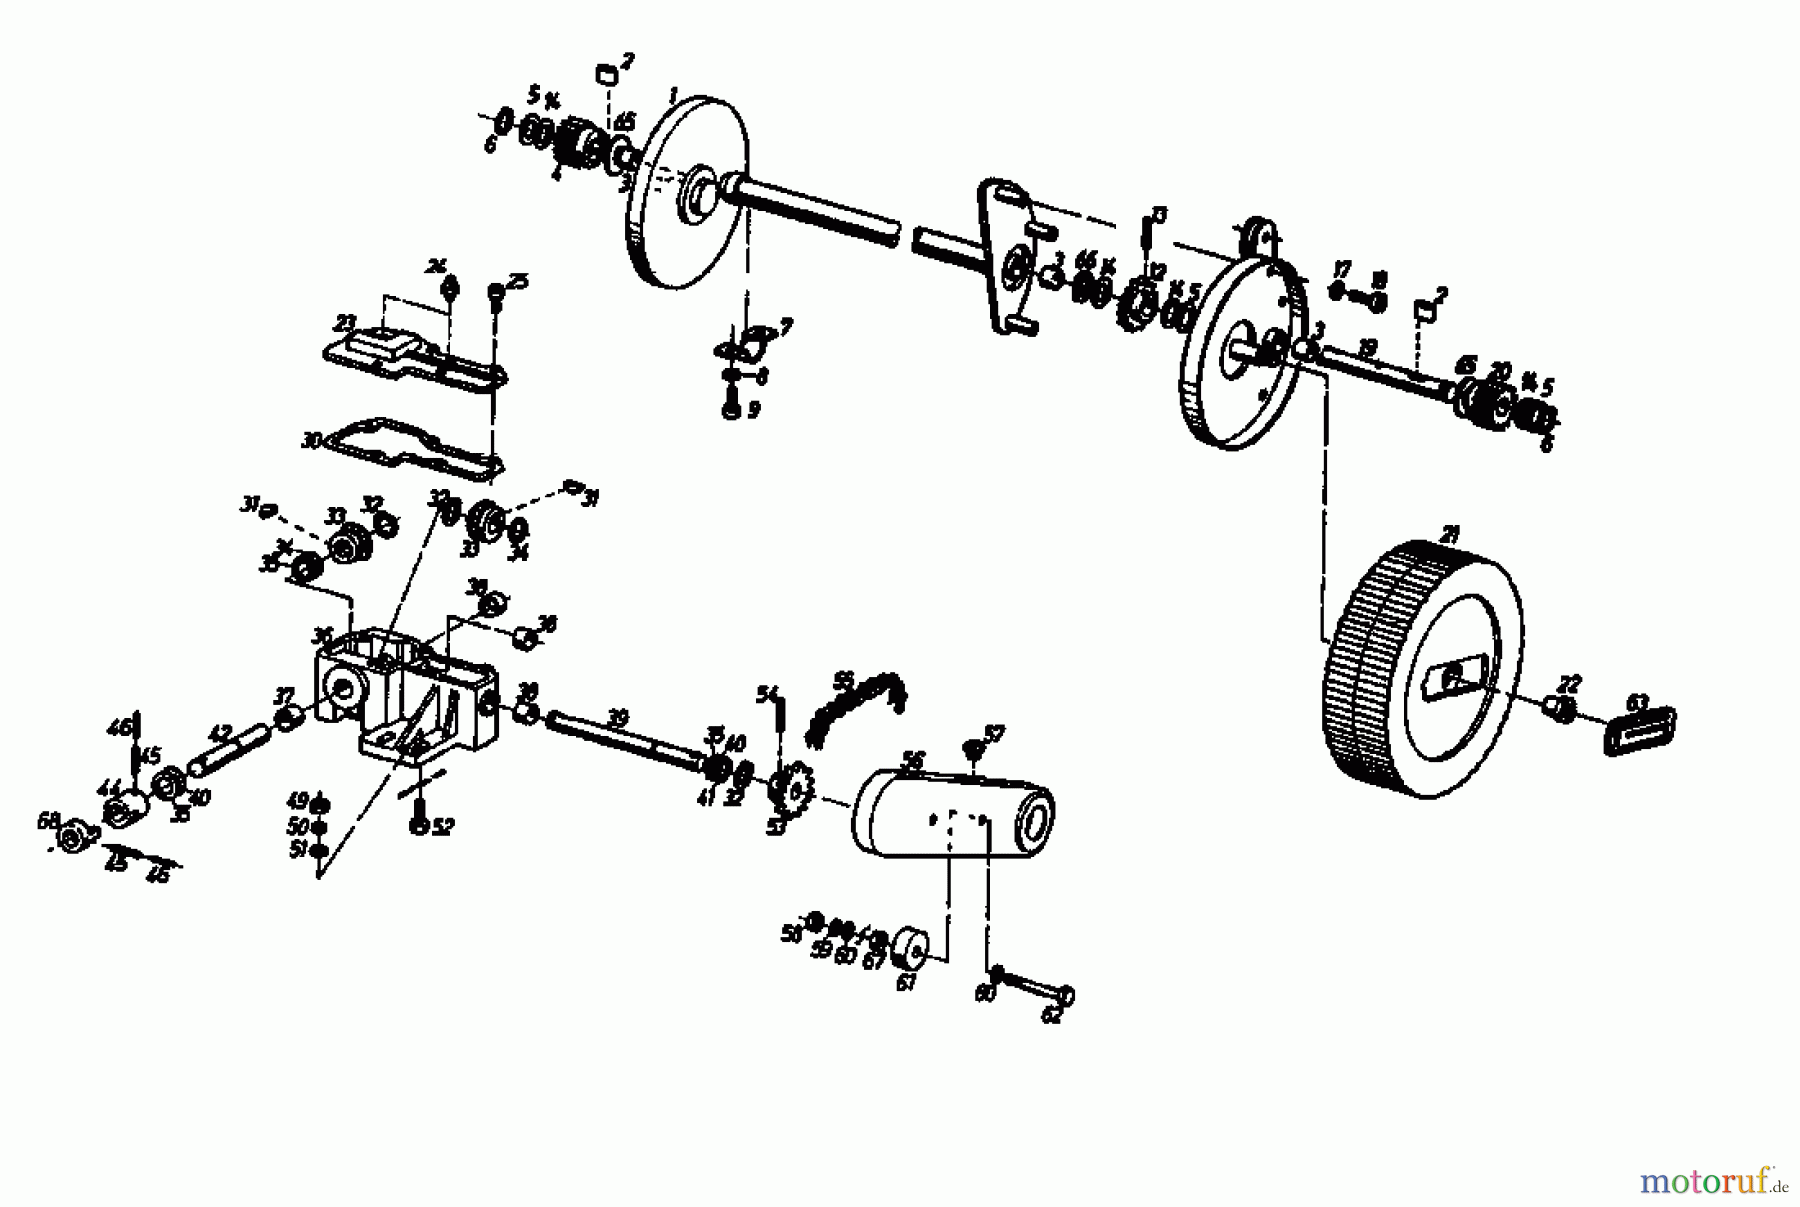  Gutbrod Motormäher mit Antrieb HB 45 REL 02885.02  (1987) Getriebe, Räder